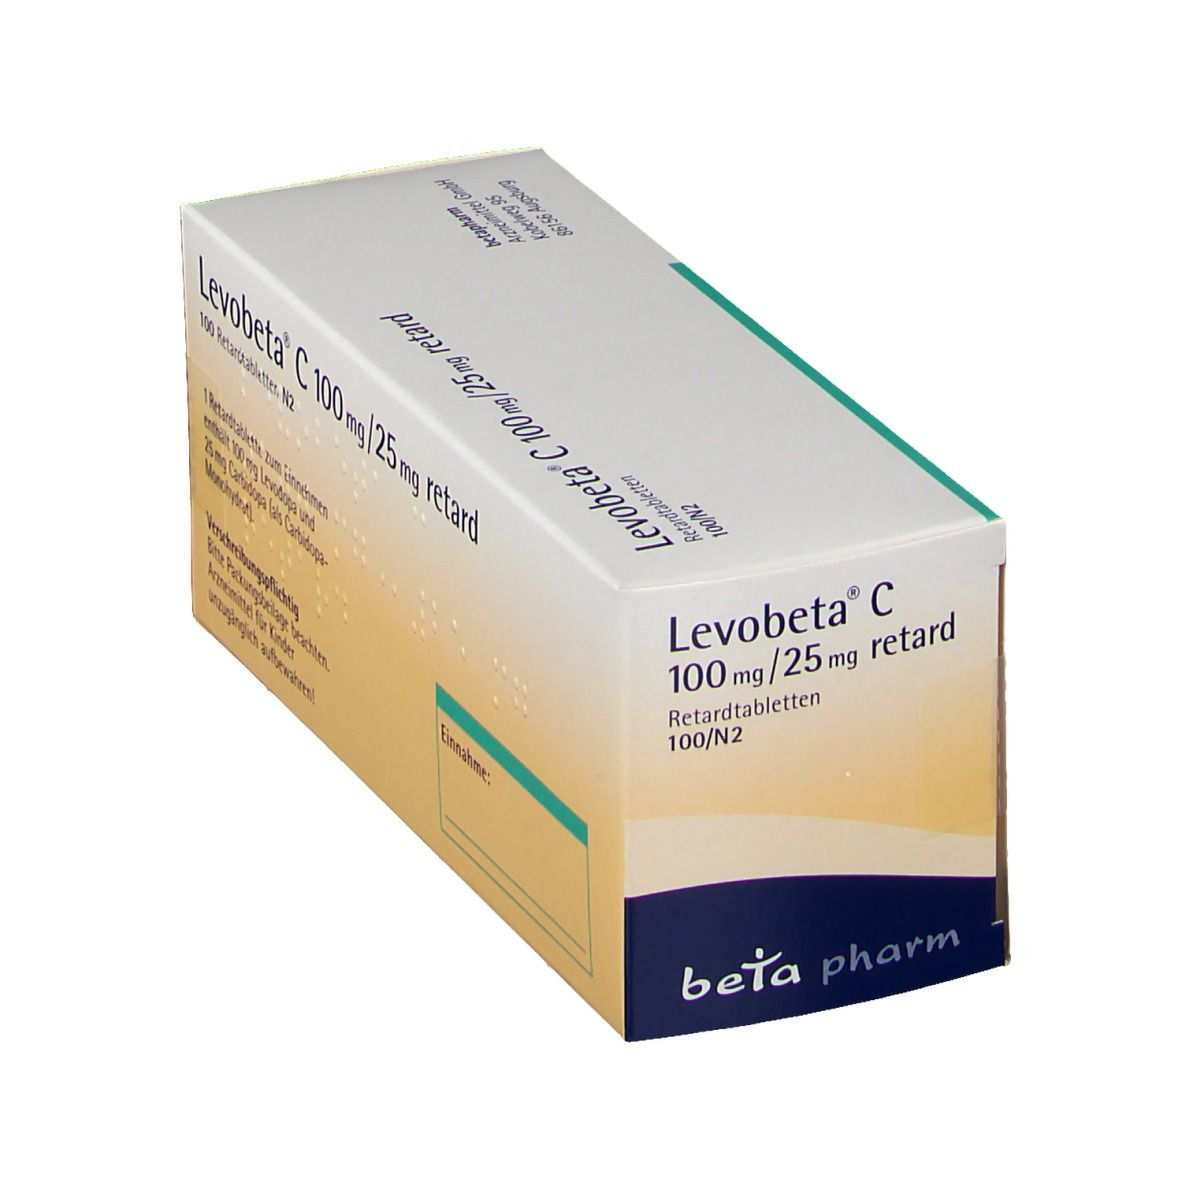 Levobeta® C 100 mg/25 mg retard